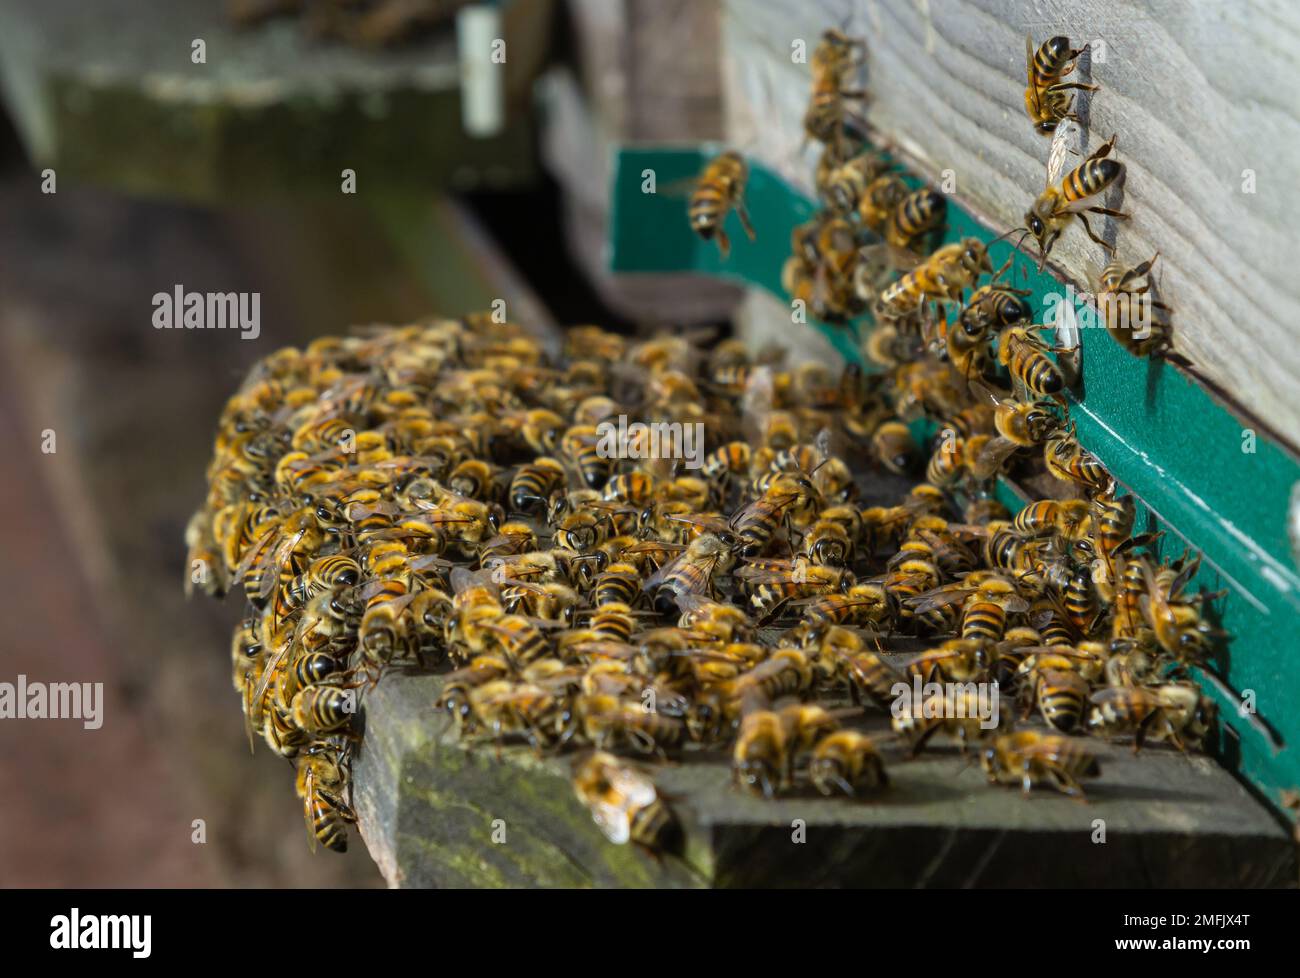 essaim d'abeilles volant autour de ruches. Les abeilles revenant de la collecte de miel volent de retour à la ruche. Abeilles domestiques, apiculture concept. Banque D'Images